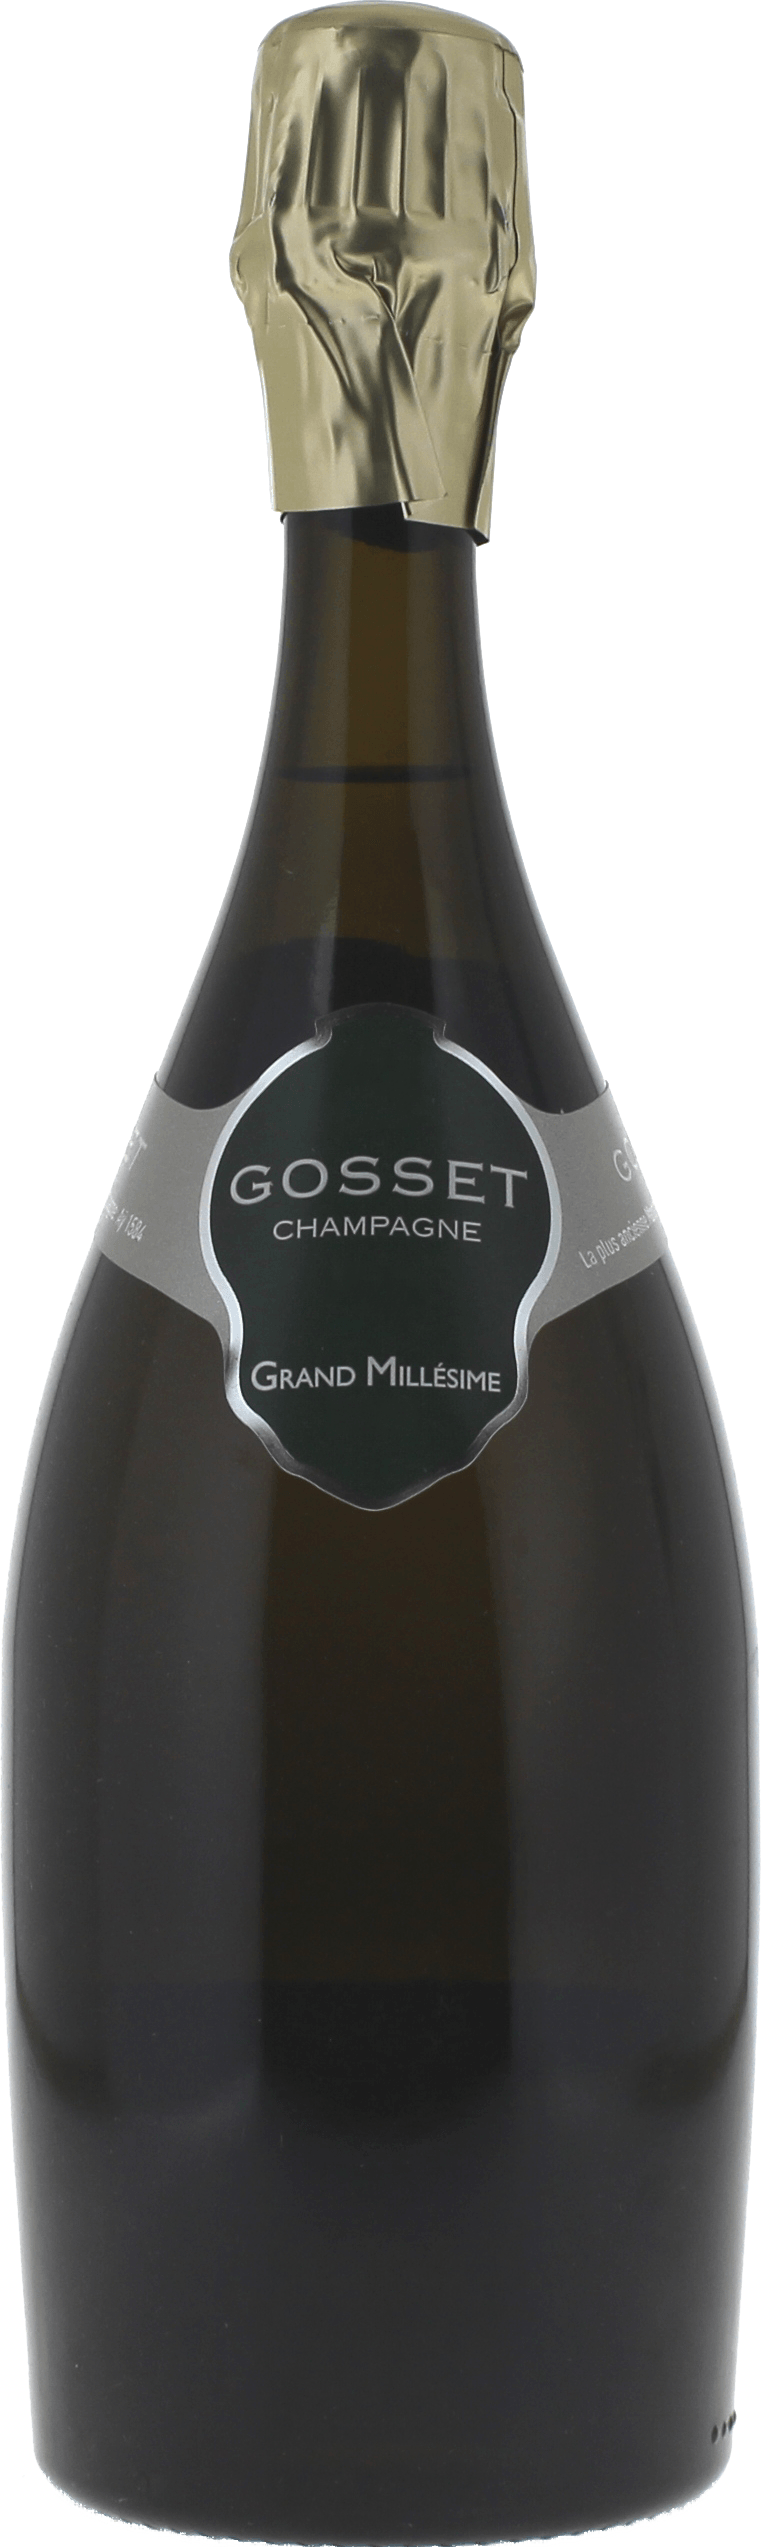 Gosset grand millsime brut 2006  Gosset, Champagne